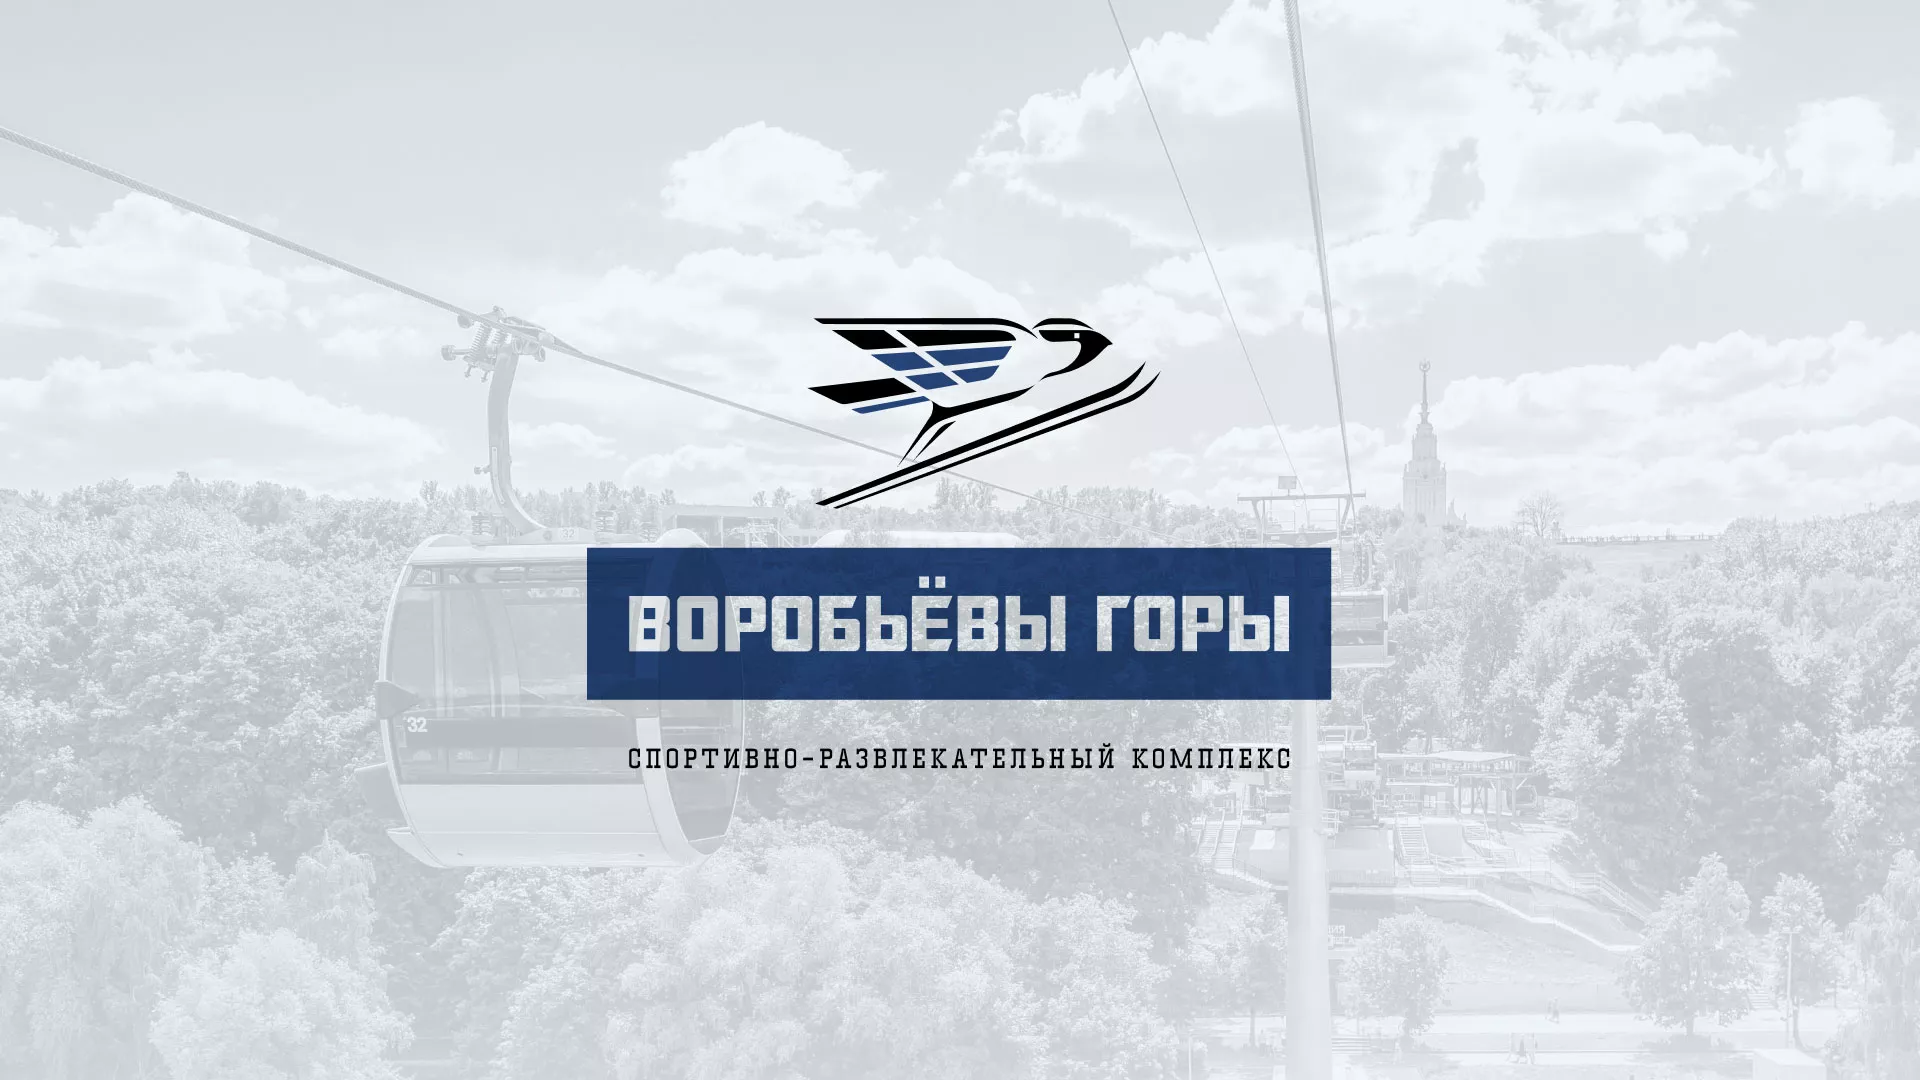 Разработка сайта в Завитинске для спортивно-развлекательного комплекса «Воробьёвы горы»